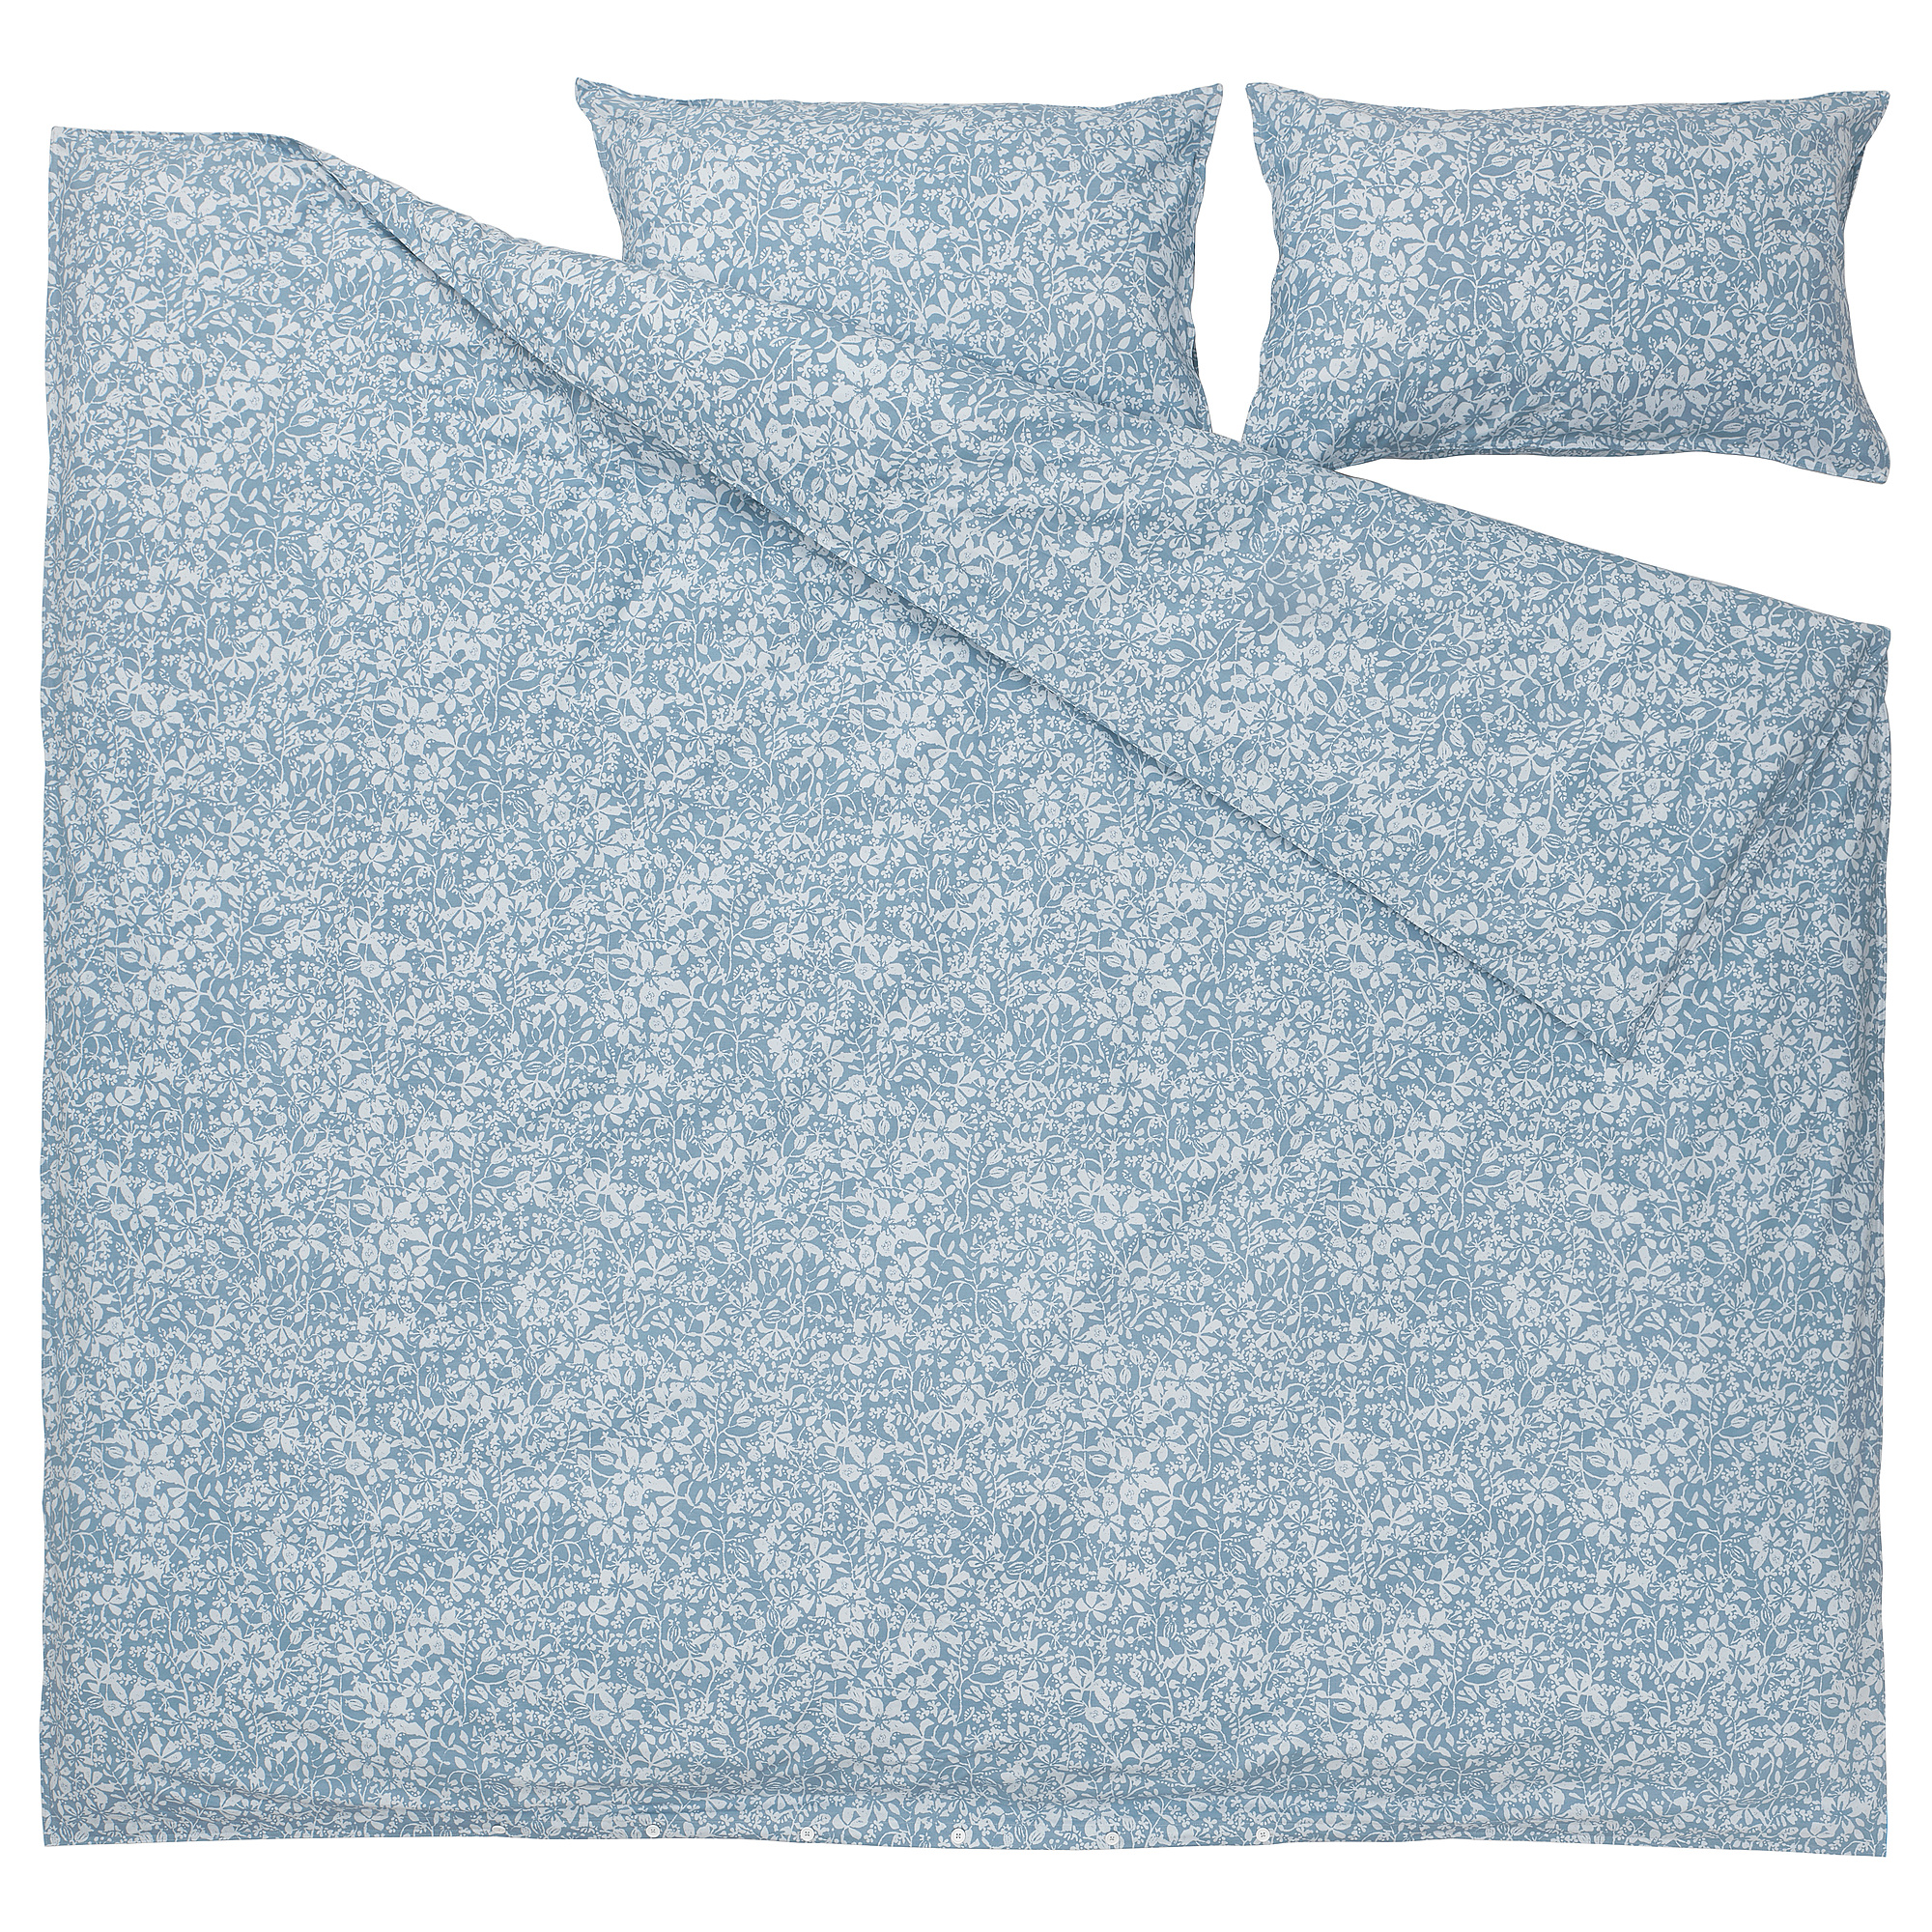 SOMMARSLÖJA duvet cover and 2 pillowcases